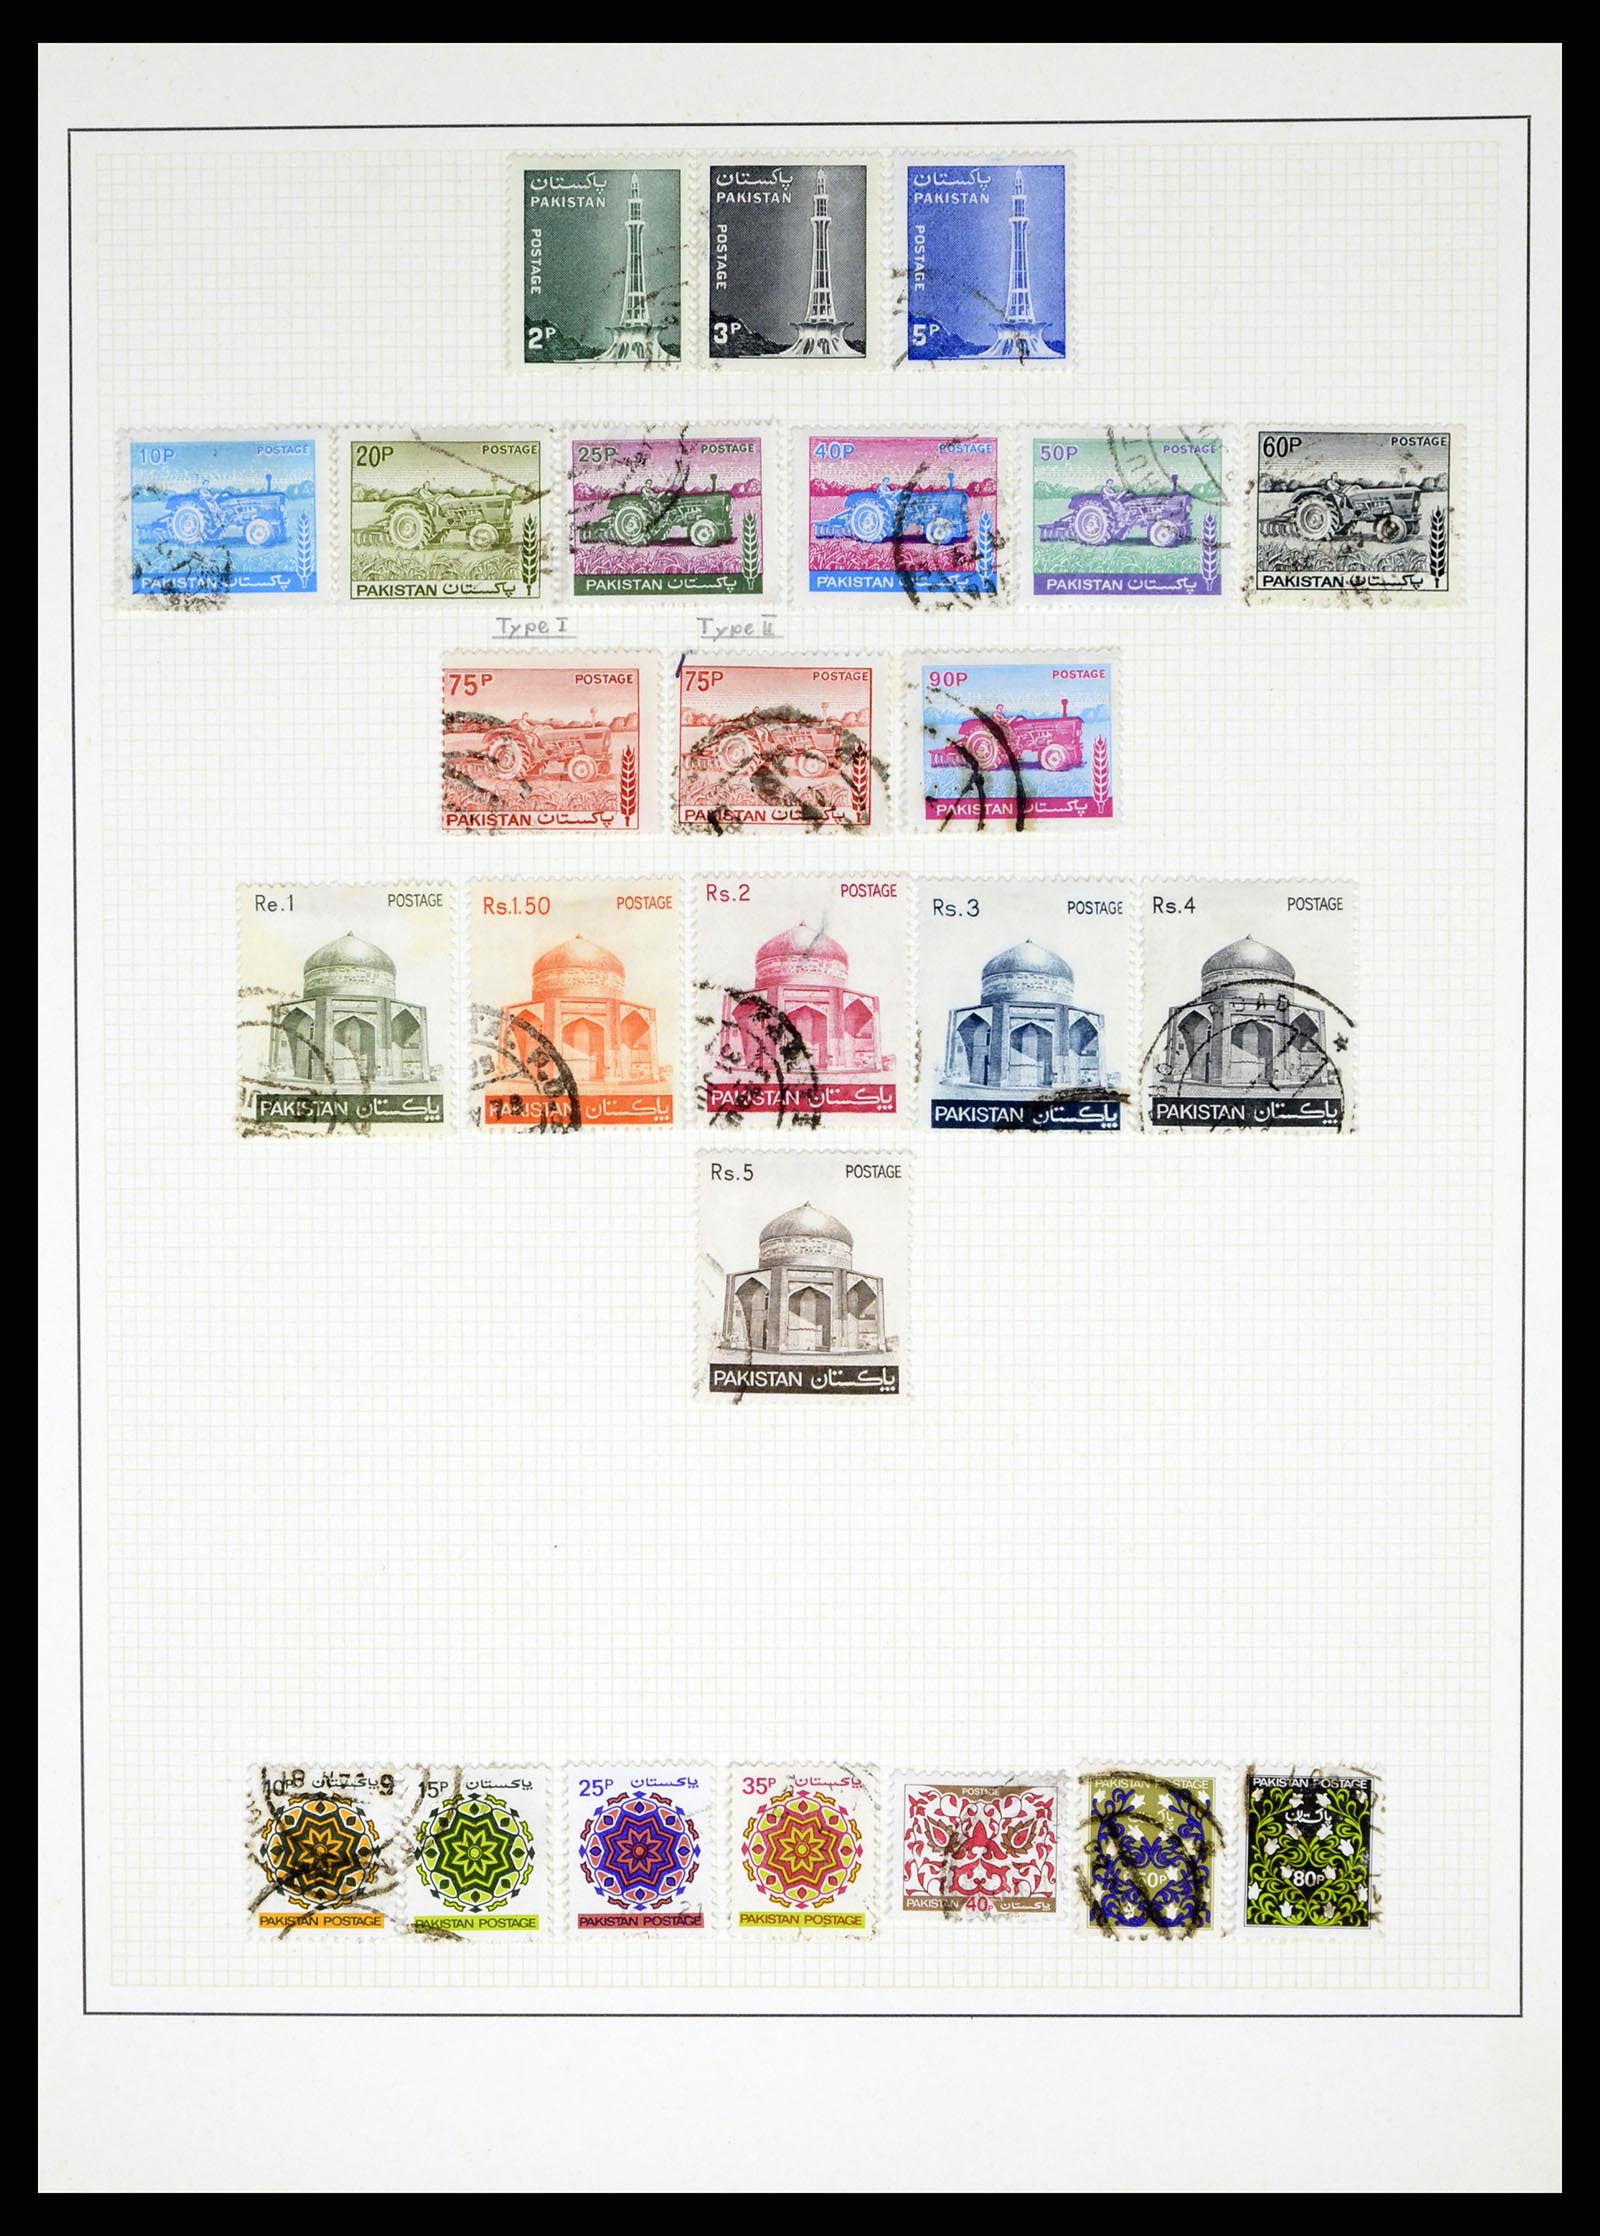 37619 045 - Stamp collection 37619 Pakistan/Bangladesh 1947-2000.